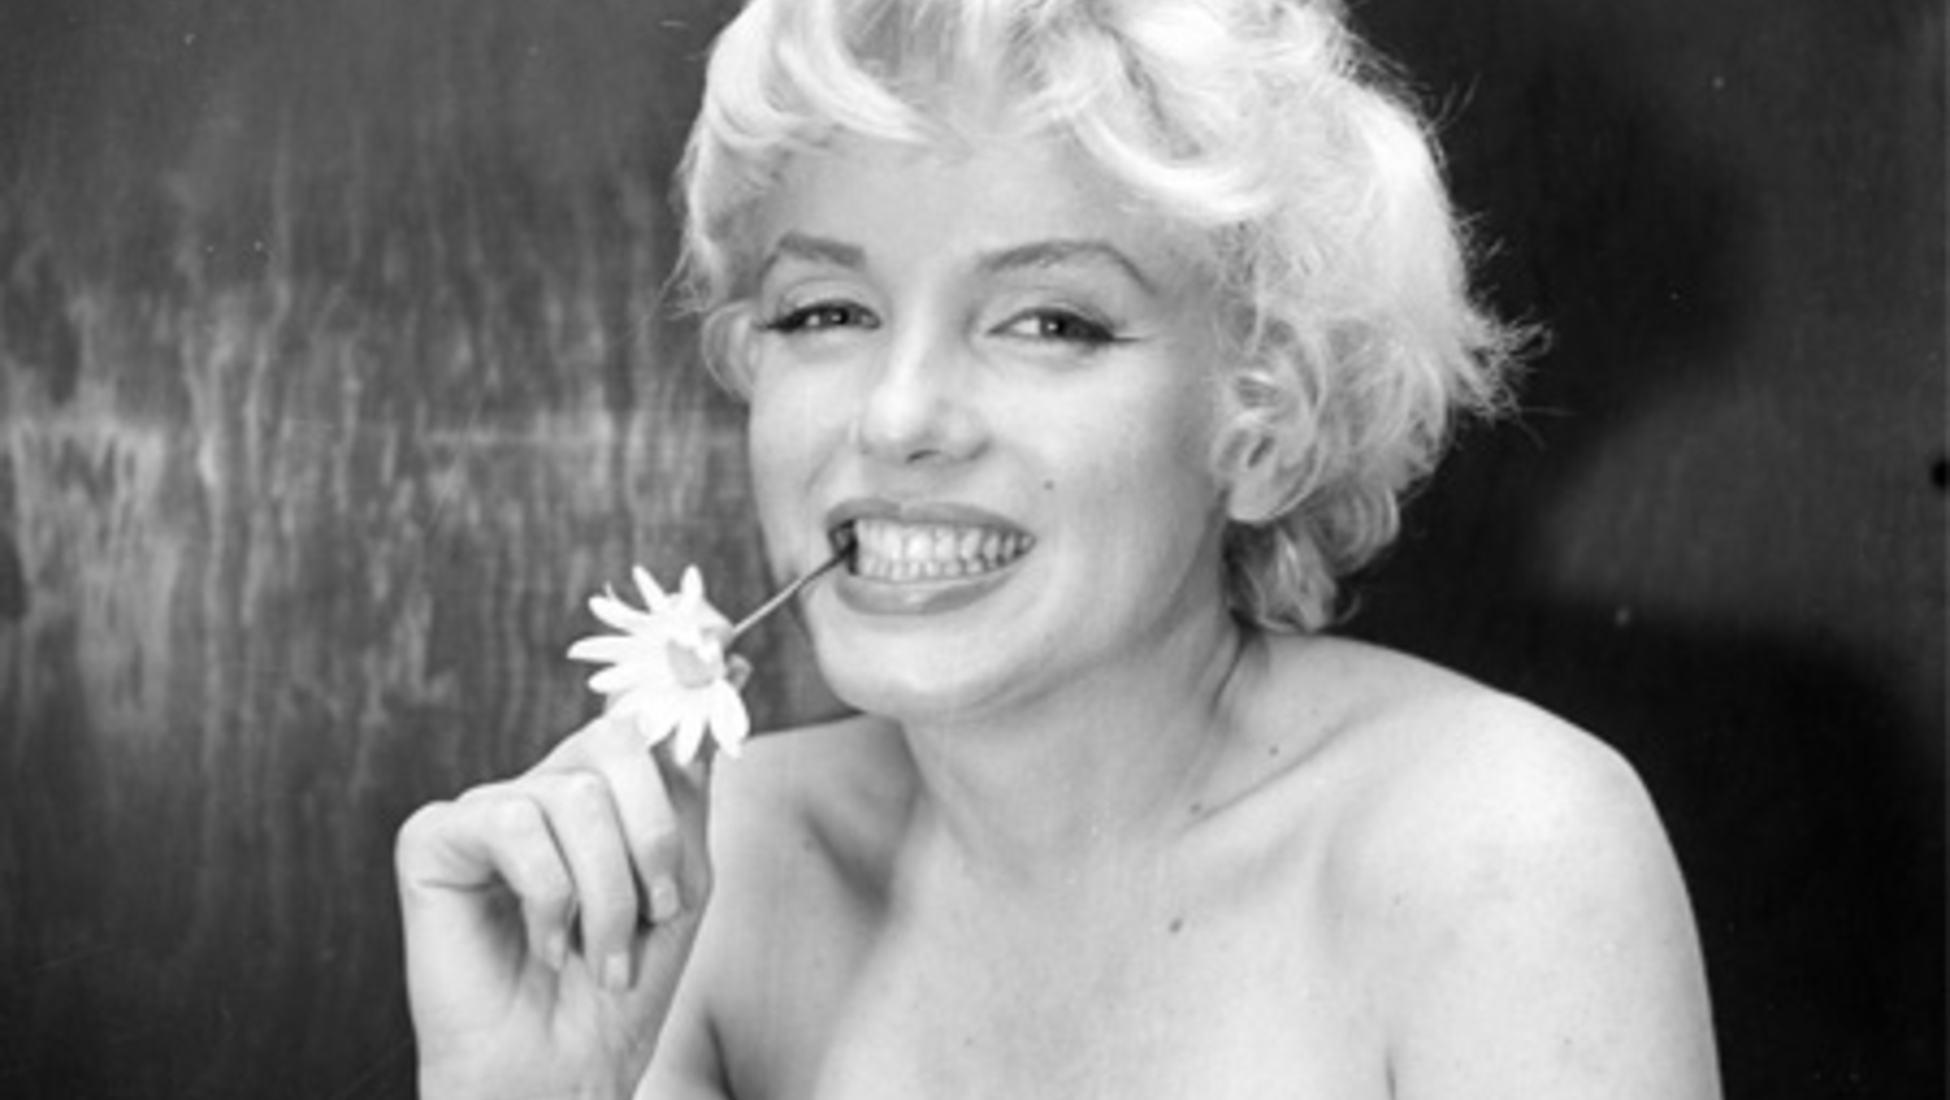 6 curiosidades que você provavelmente não sabia sobre Marilyn Monroe, Cultura